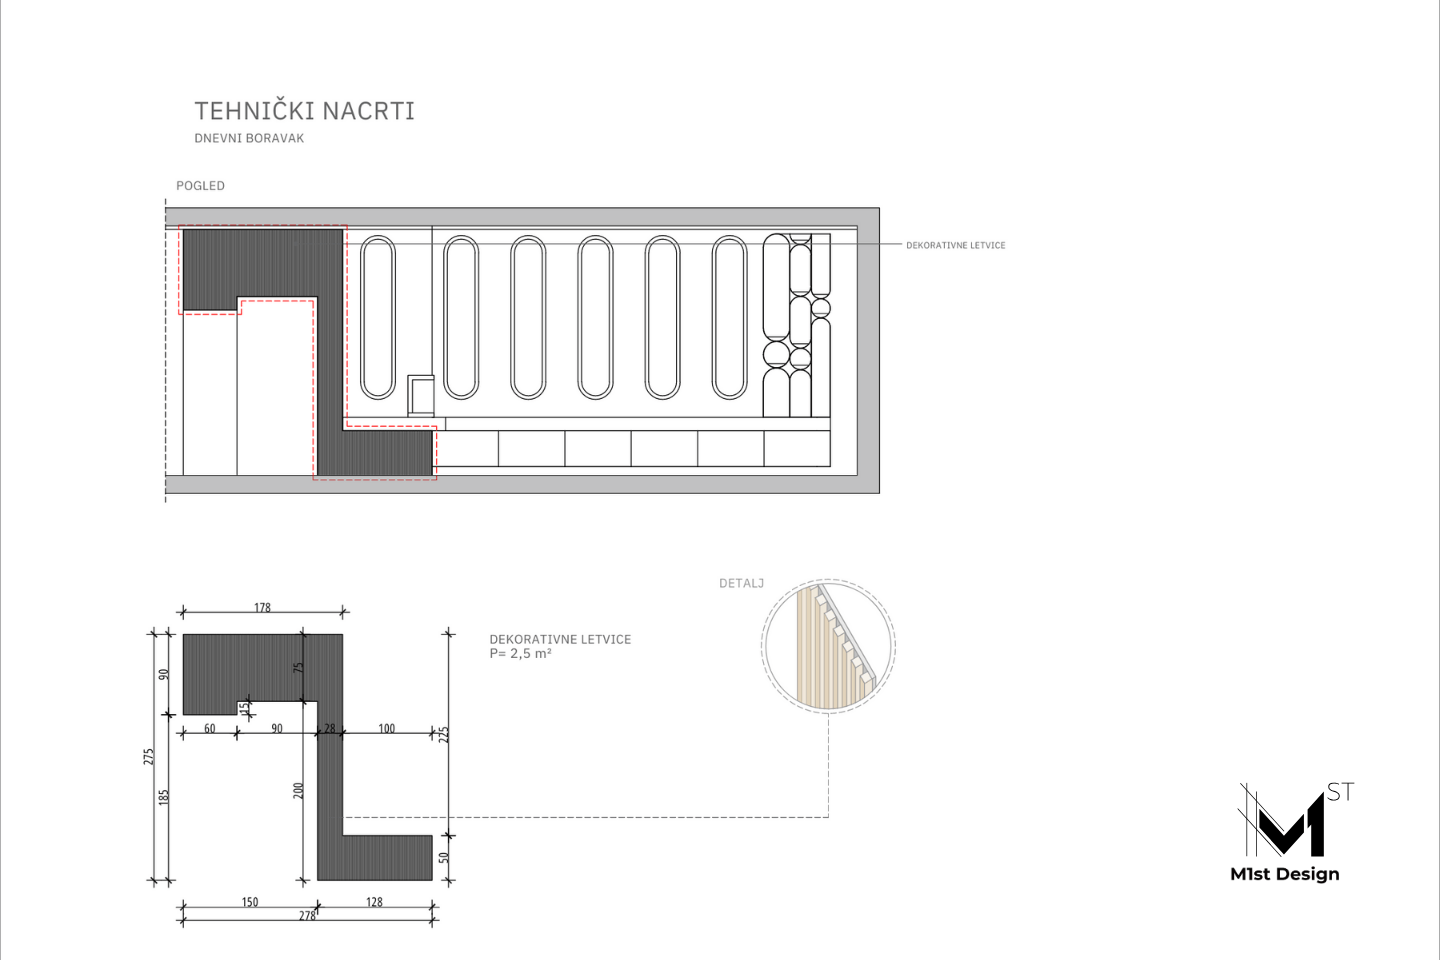 Dizajn interijera u klaićevoj - tehnički nacrti dnevnog boravka